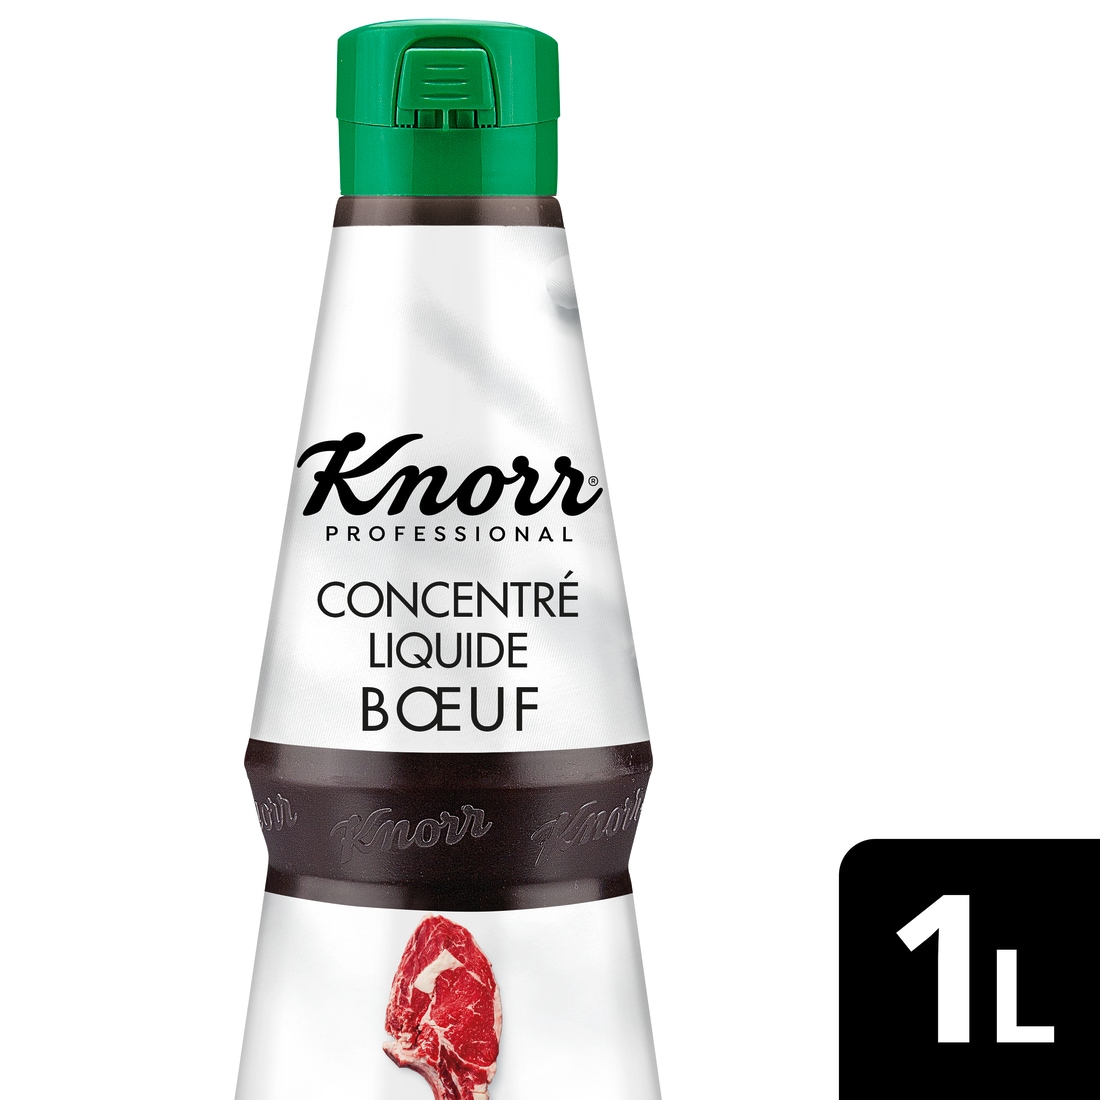 Knorr Professional Concentré Liquide Bœuf 1L - Un goût authentique et intense